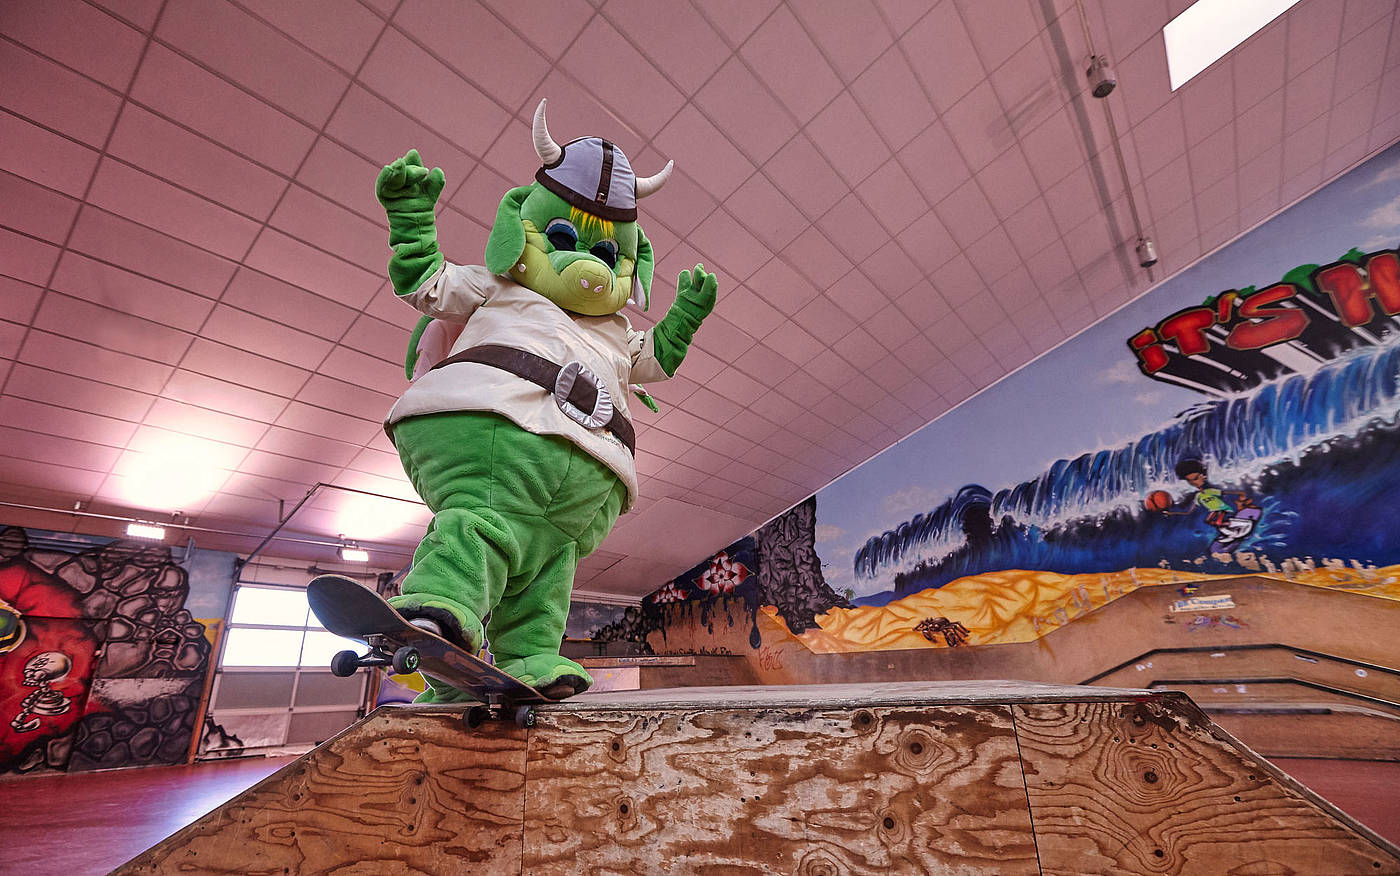 Leif fährt Skatebord in der Skatehalle